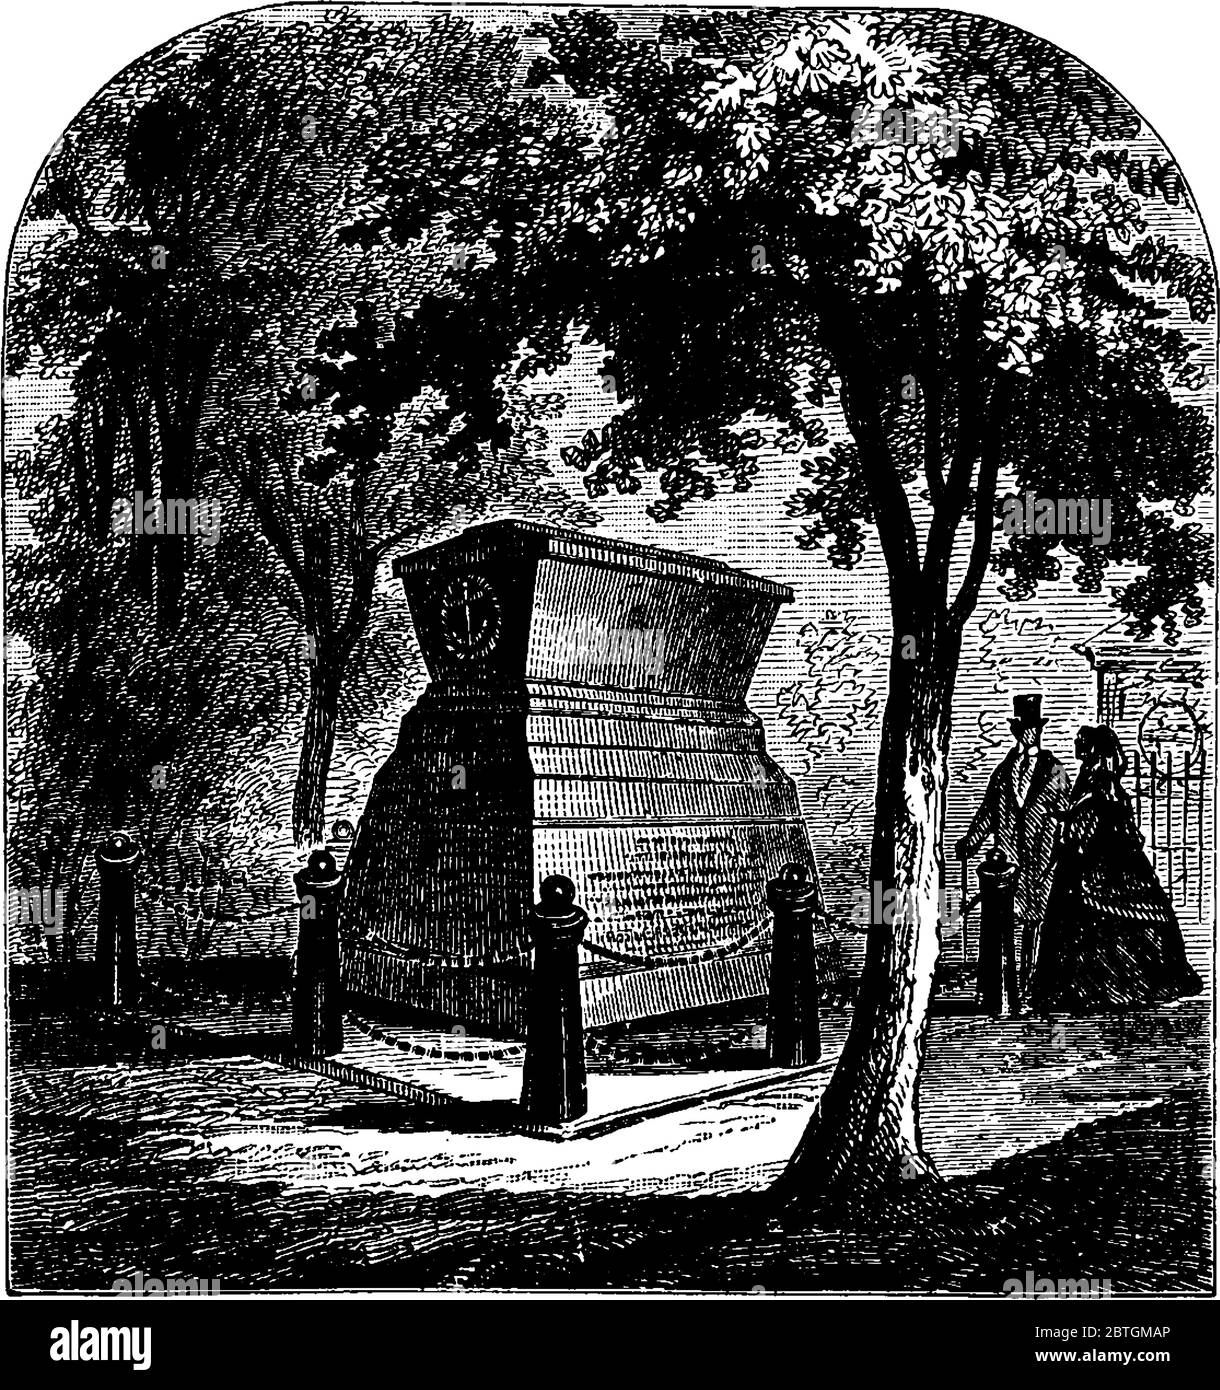 Le monument dédié à James Lawrence et Ludlow qui ont combattu pendant la guerre de 1812, dessin de ligne d'époque ou illustration de gravure. Illustration de Vecteur